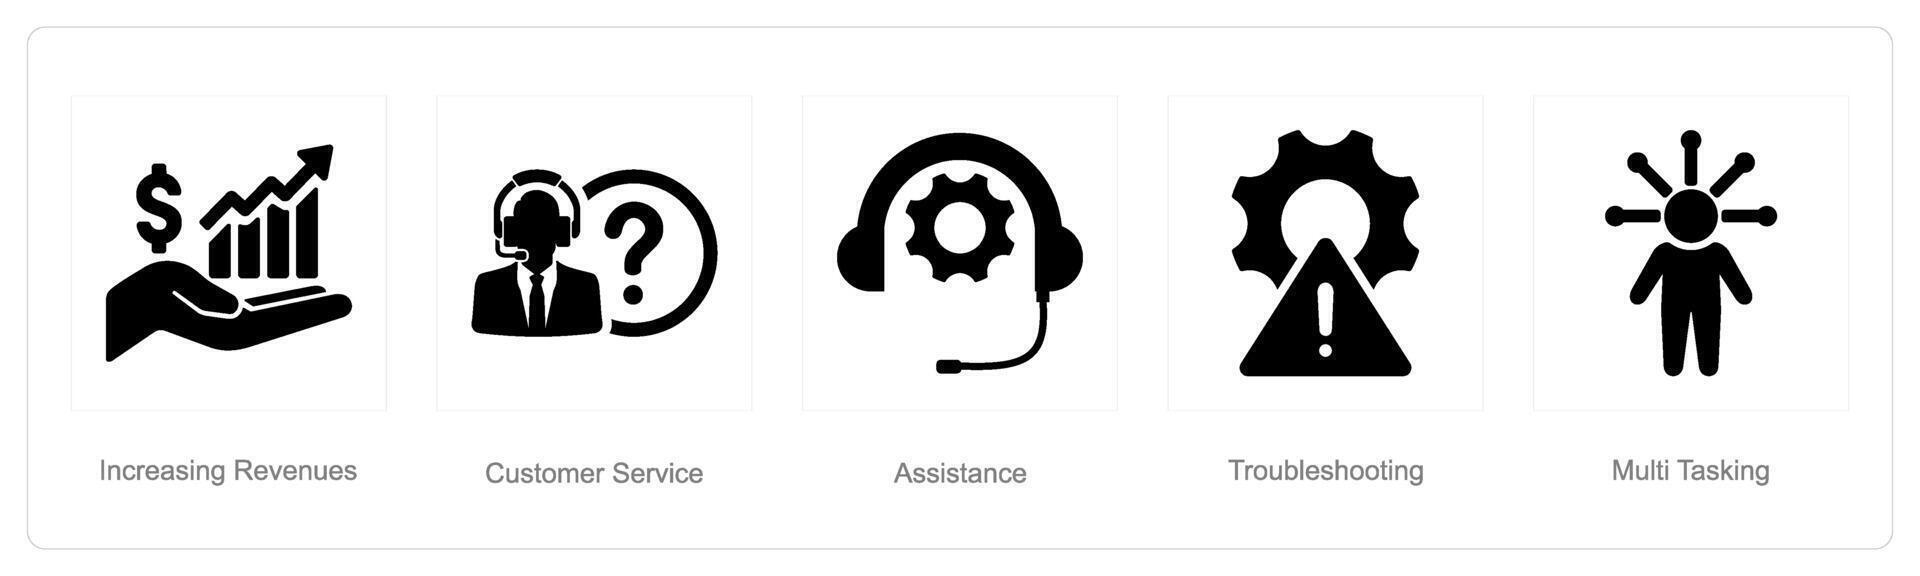 un' impostato di 5 cliente servizio icone come crescente ricavi, cliente servizio, assistenza vettore